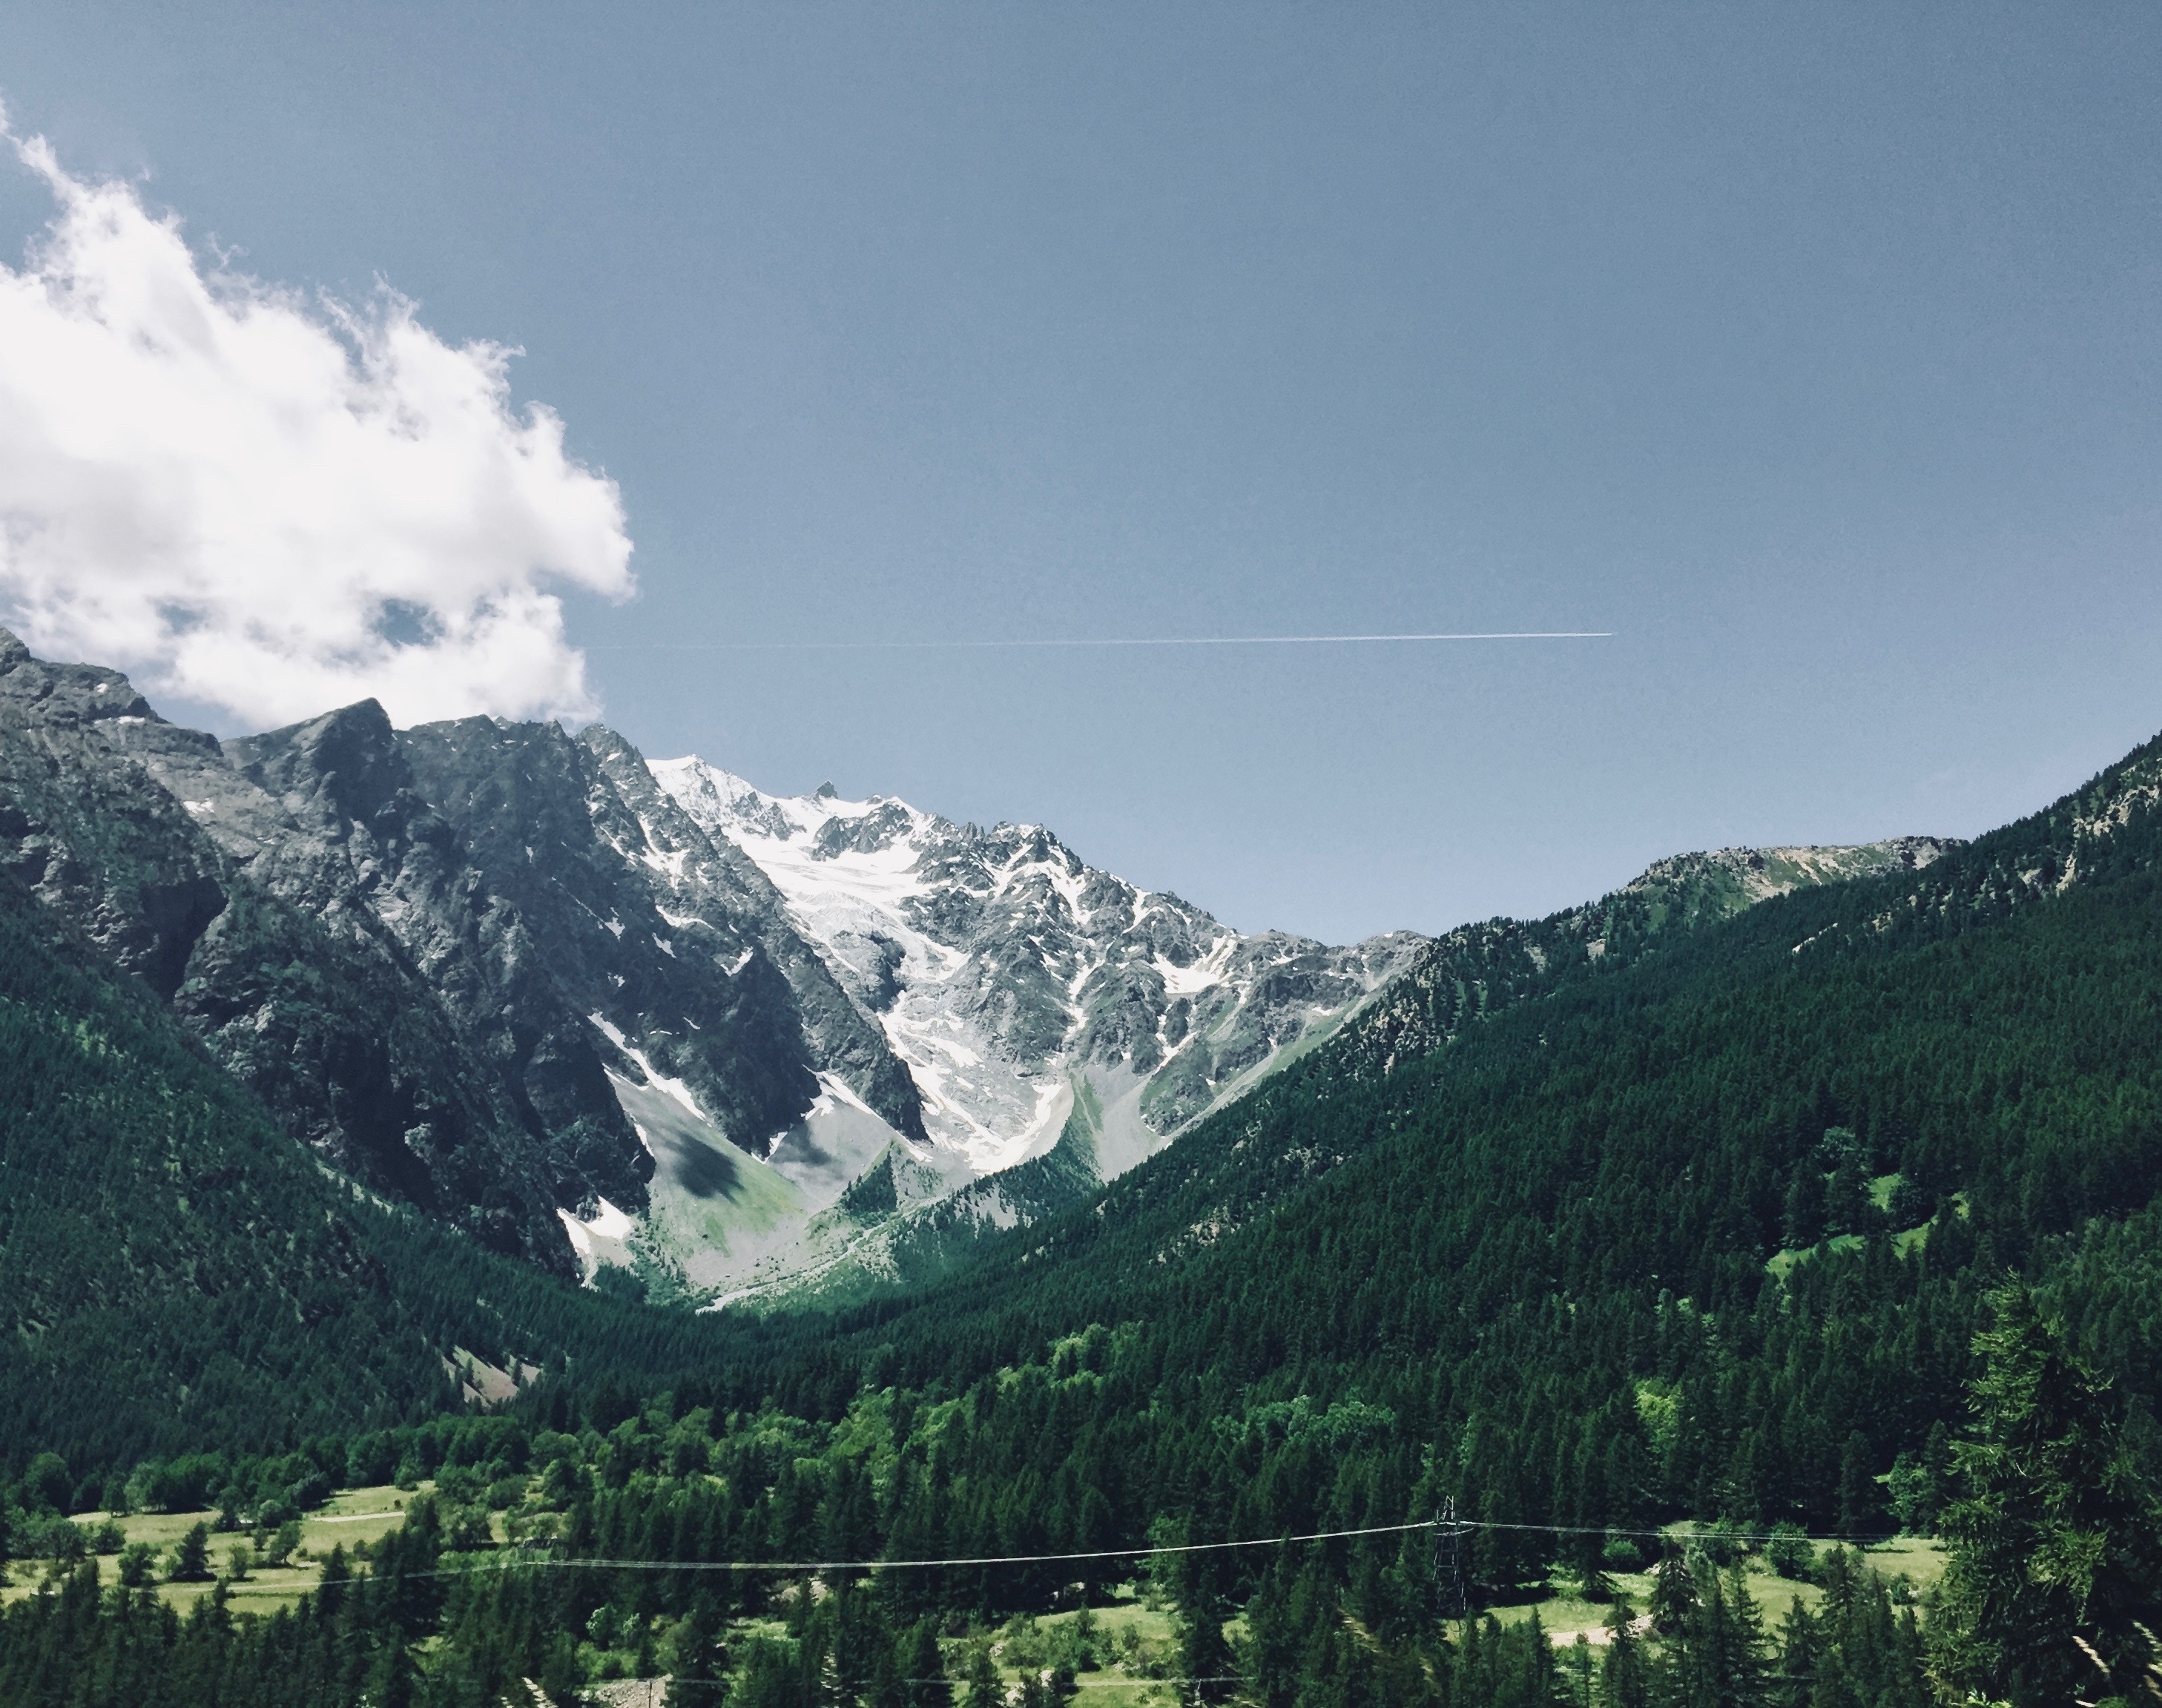 Les activités et sorties à faire dans les Alpes en été